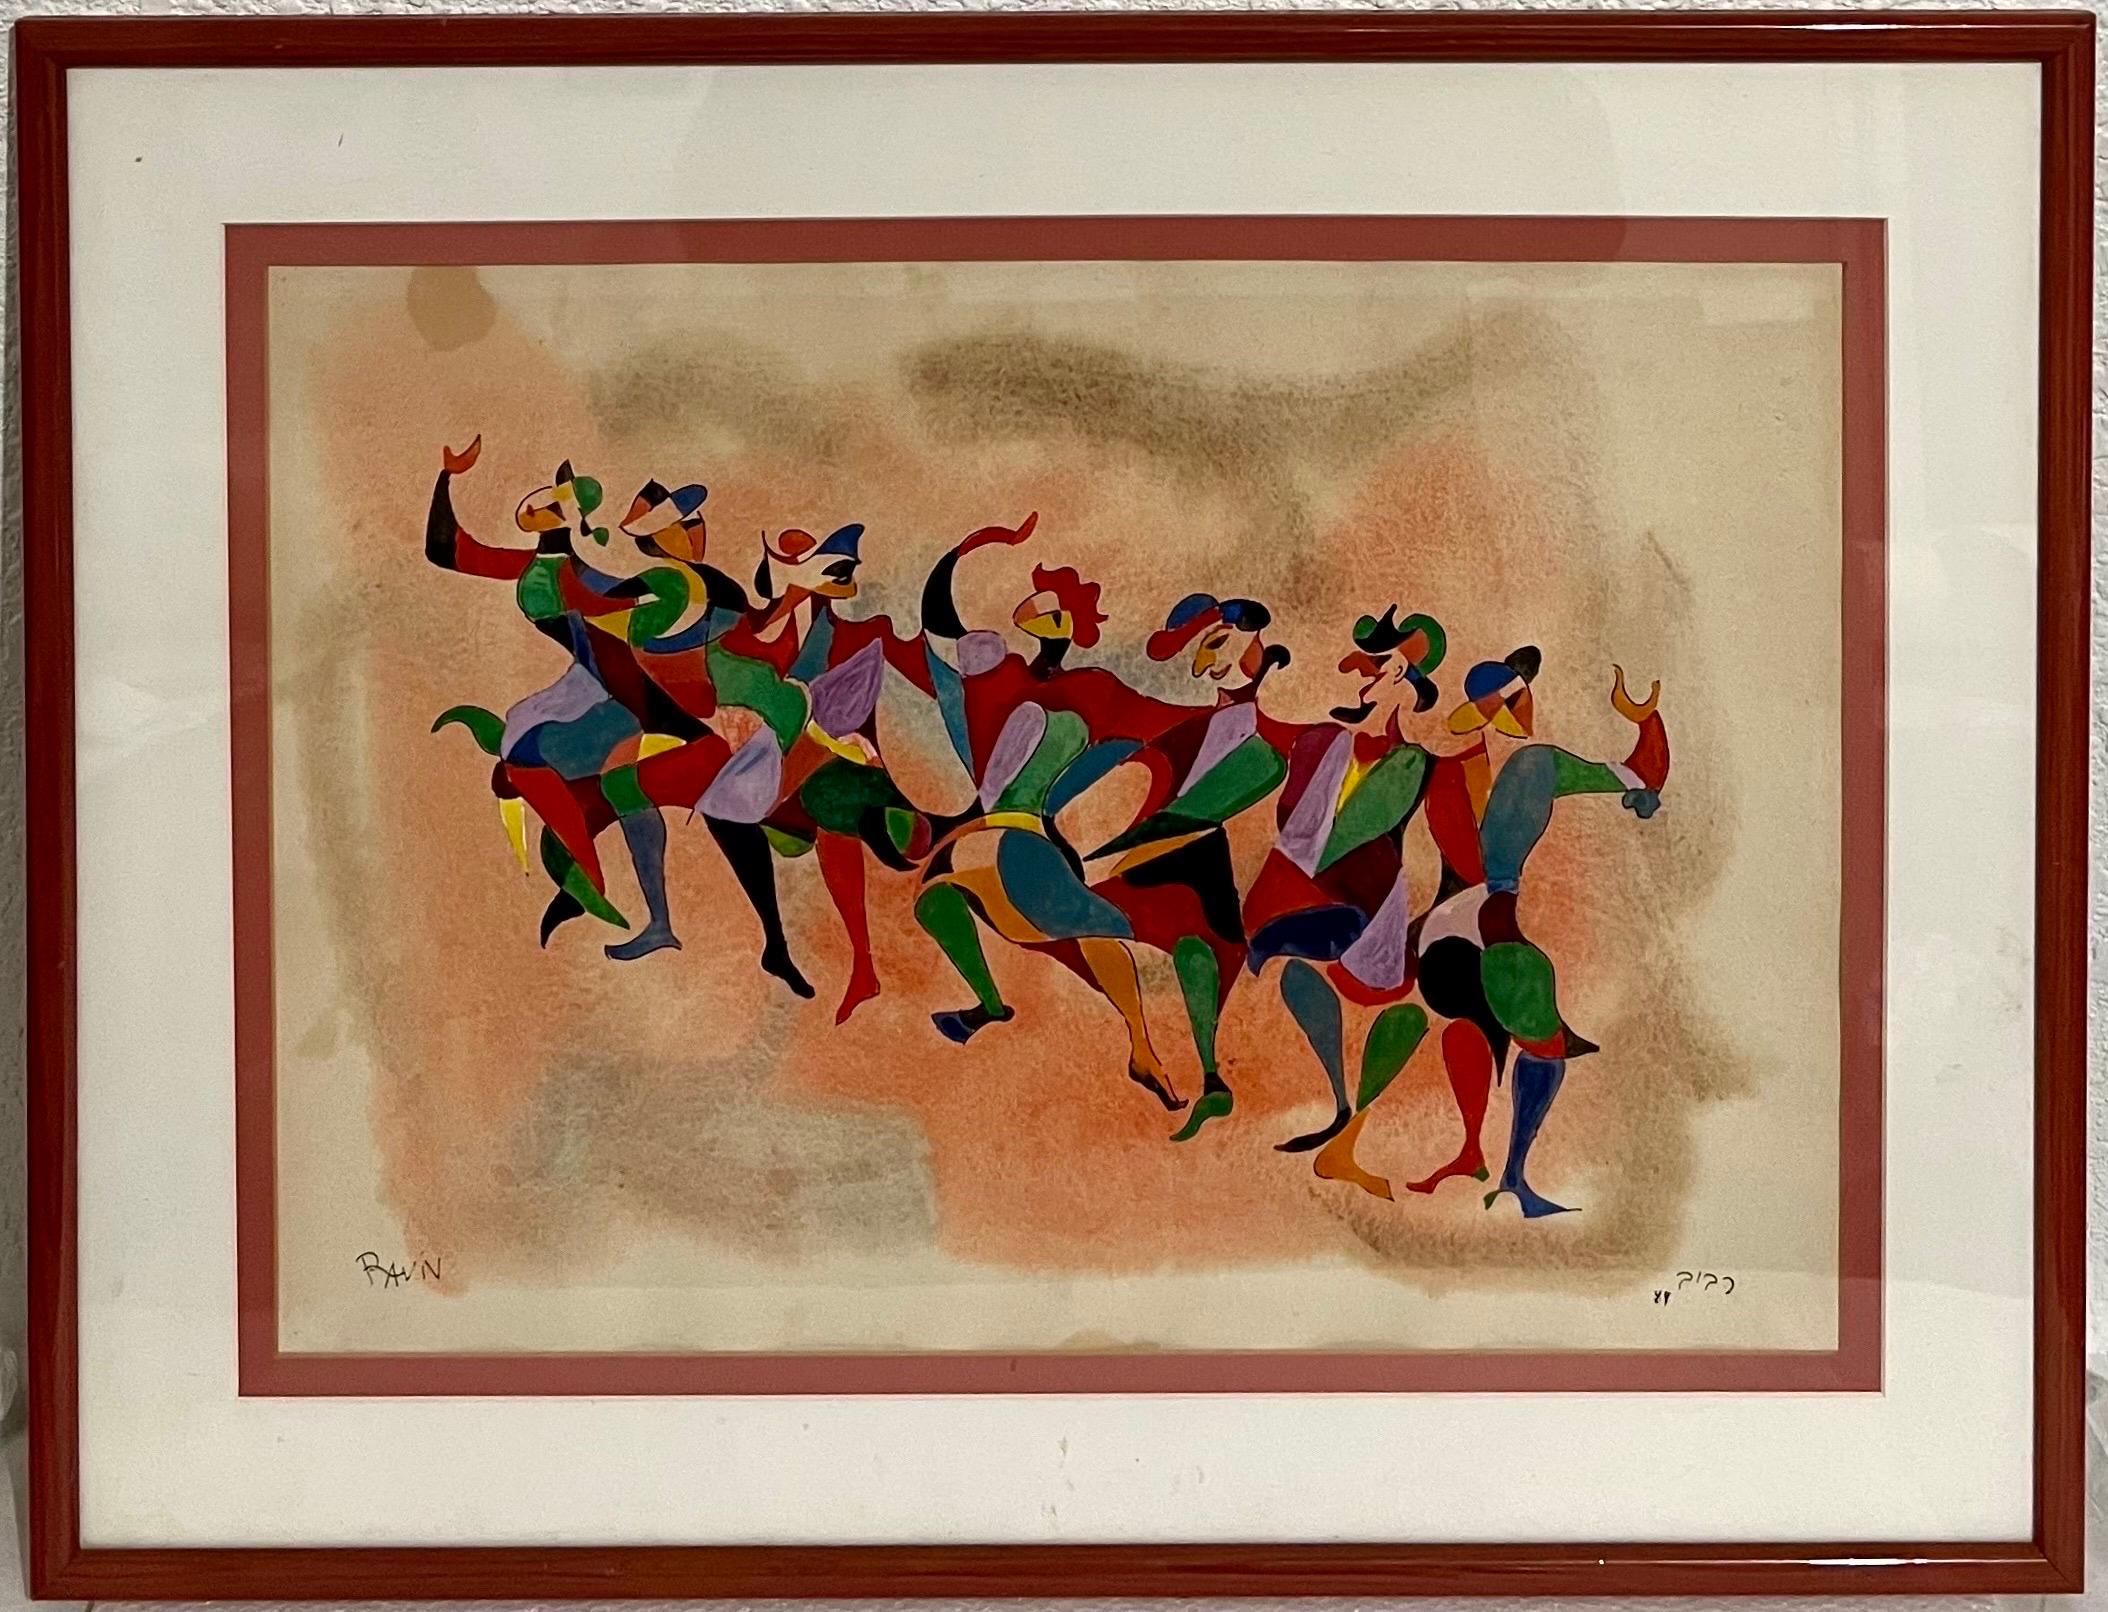 Bouffons ou clowns dansants (Chassidim colorés dansant)
Gouache sur papier
La feuille est de 19,25 X 25,25  
L'image mesure 13,5 x 19,25

Moshé Raviv-Vorobeichic, connu sous le nom de Moi Ver, né Moses Vorobeichik (1904-1995) était un photographe et